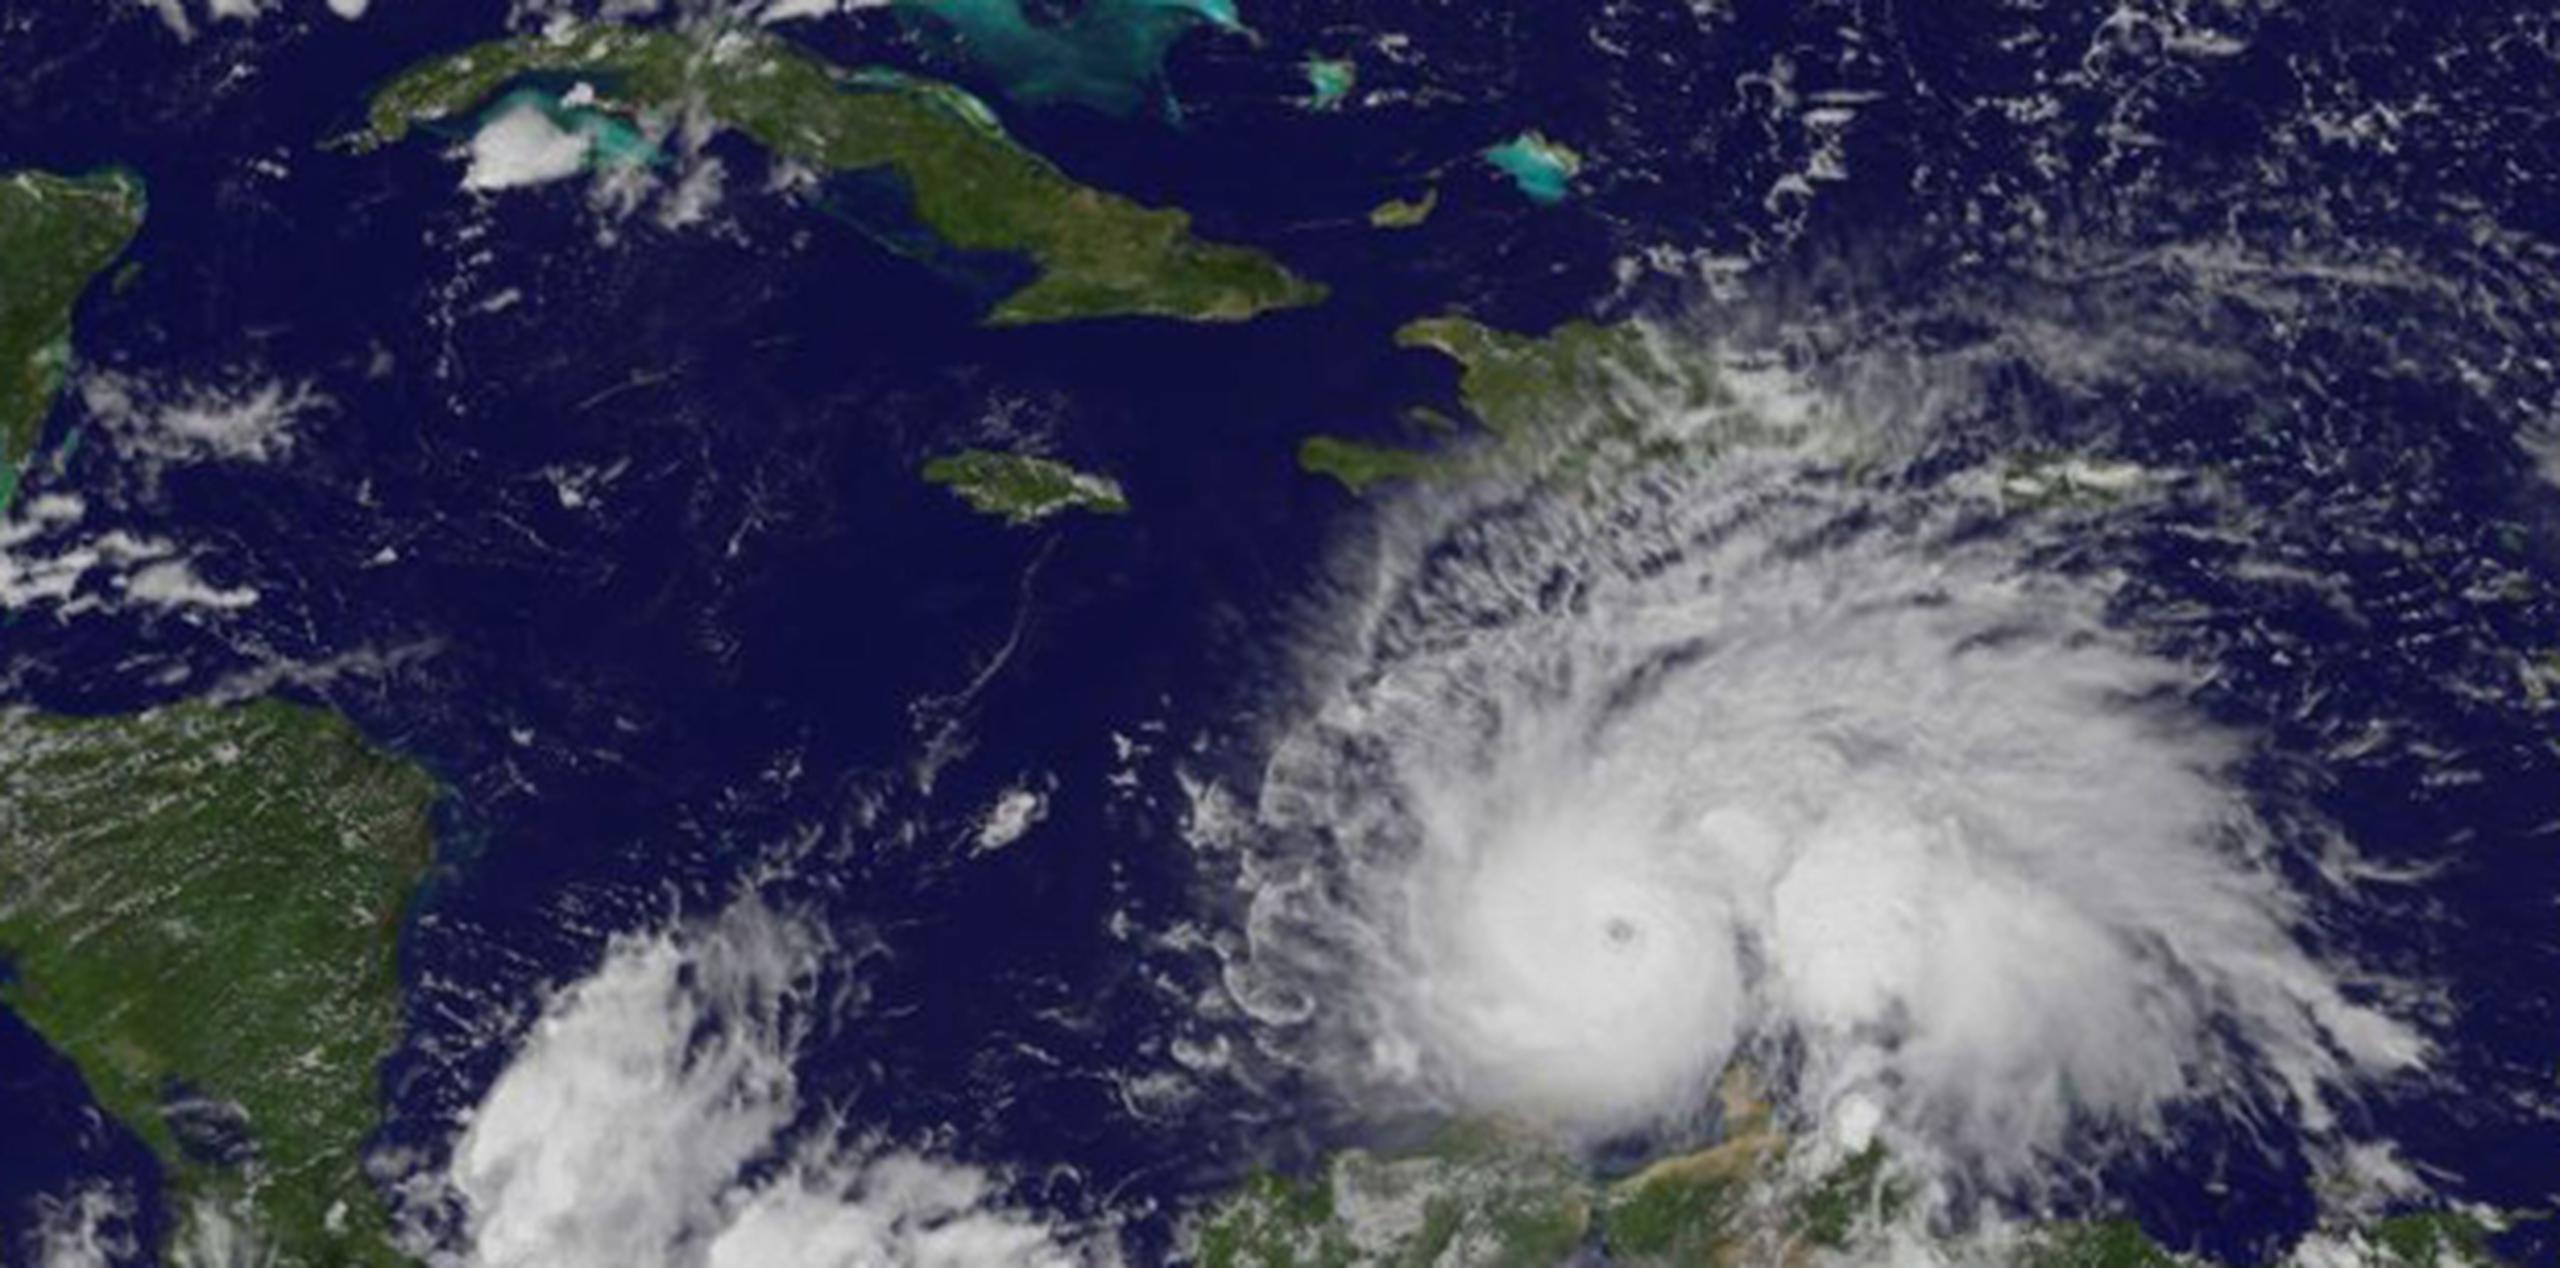 El huracán Matthew, de categría 4, mantenía esta tarde un movimiento errático sobre aguas del Caribe, pero se espera que avance hacia el oeste y luego gire al norte. (EFE/EPA/NASA)